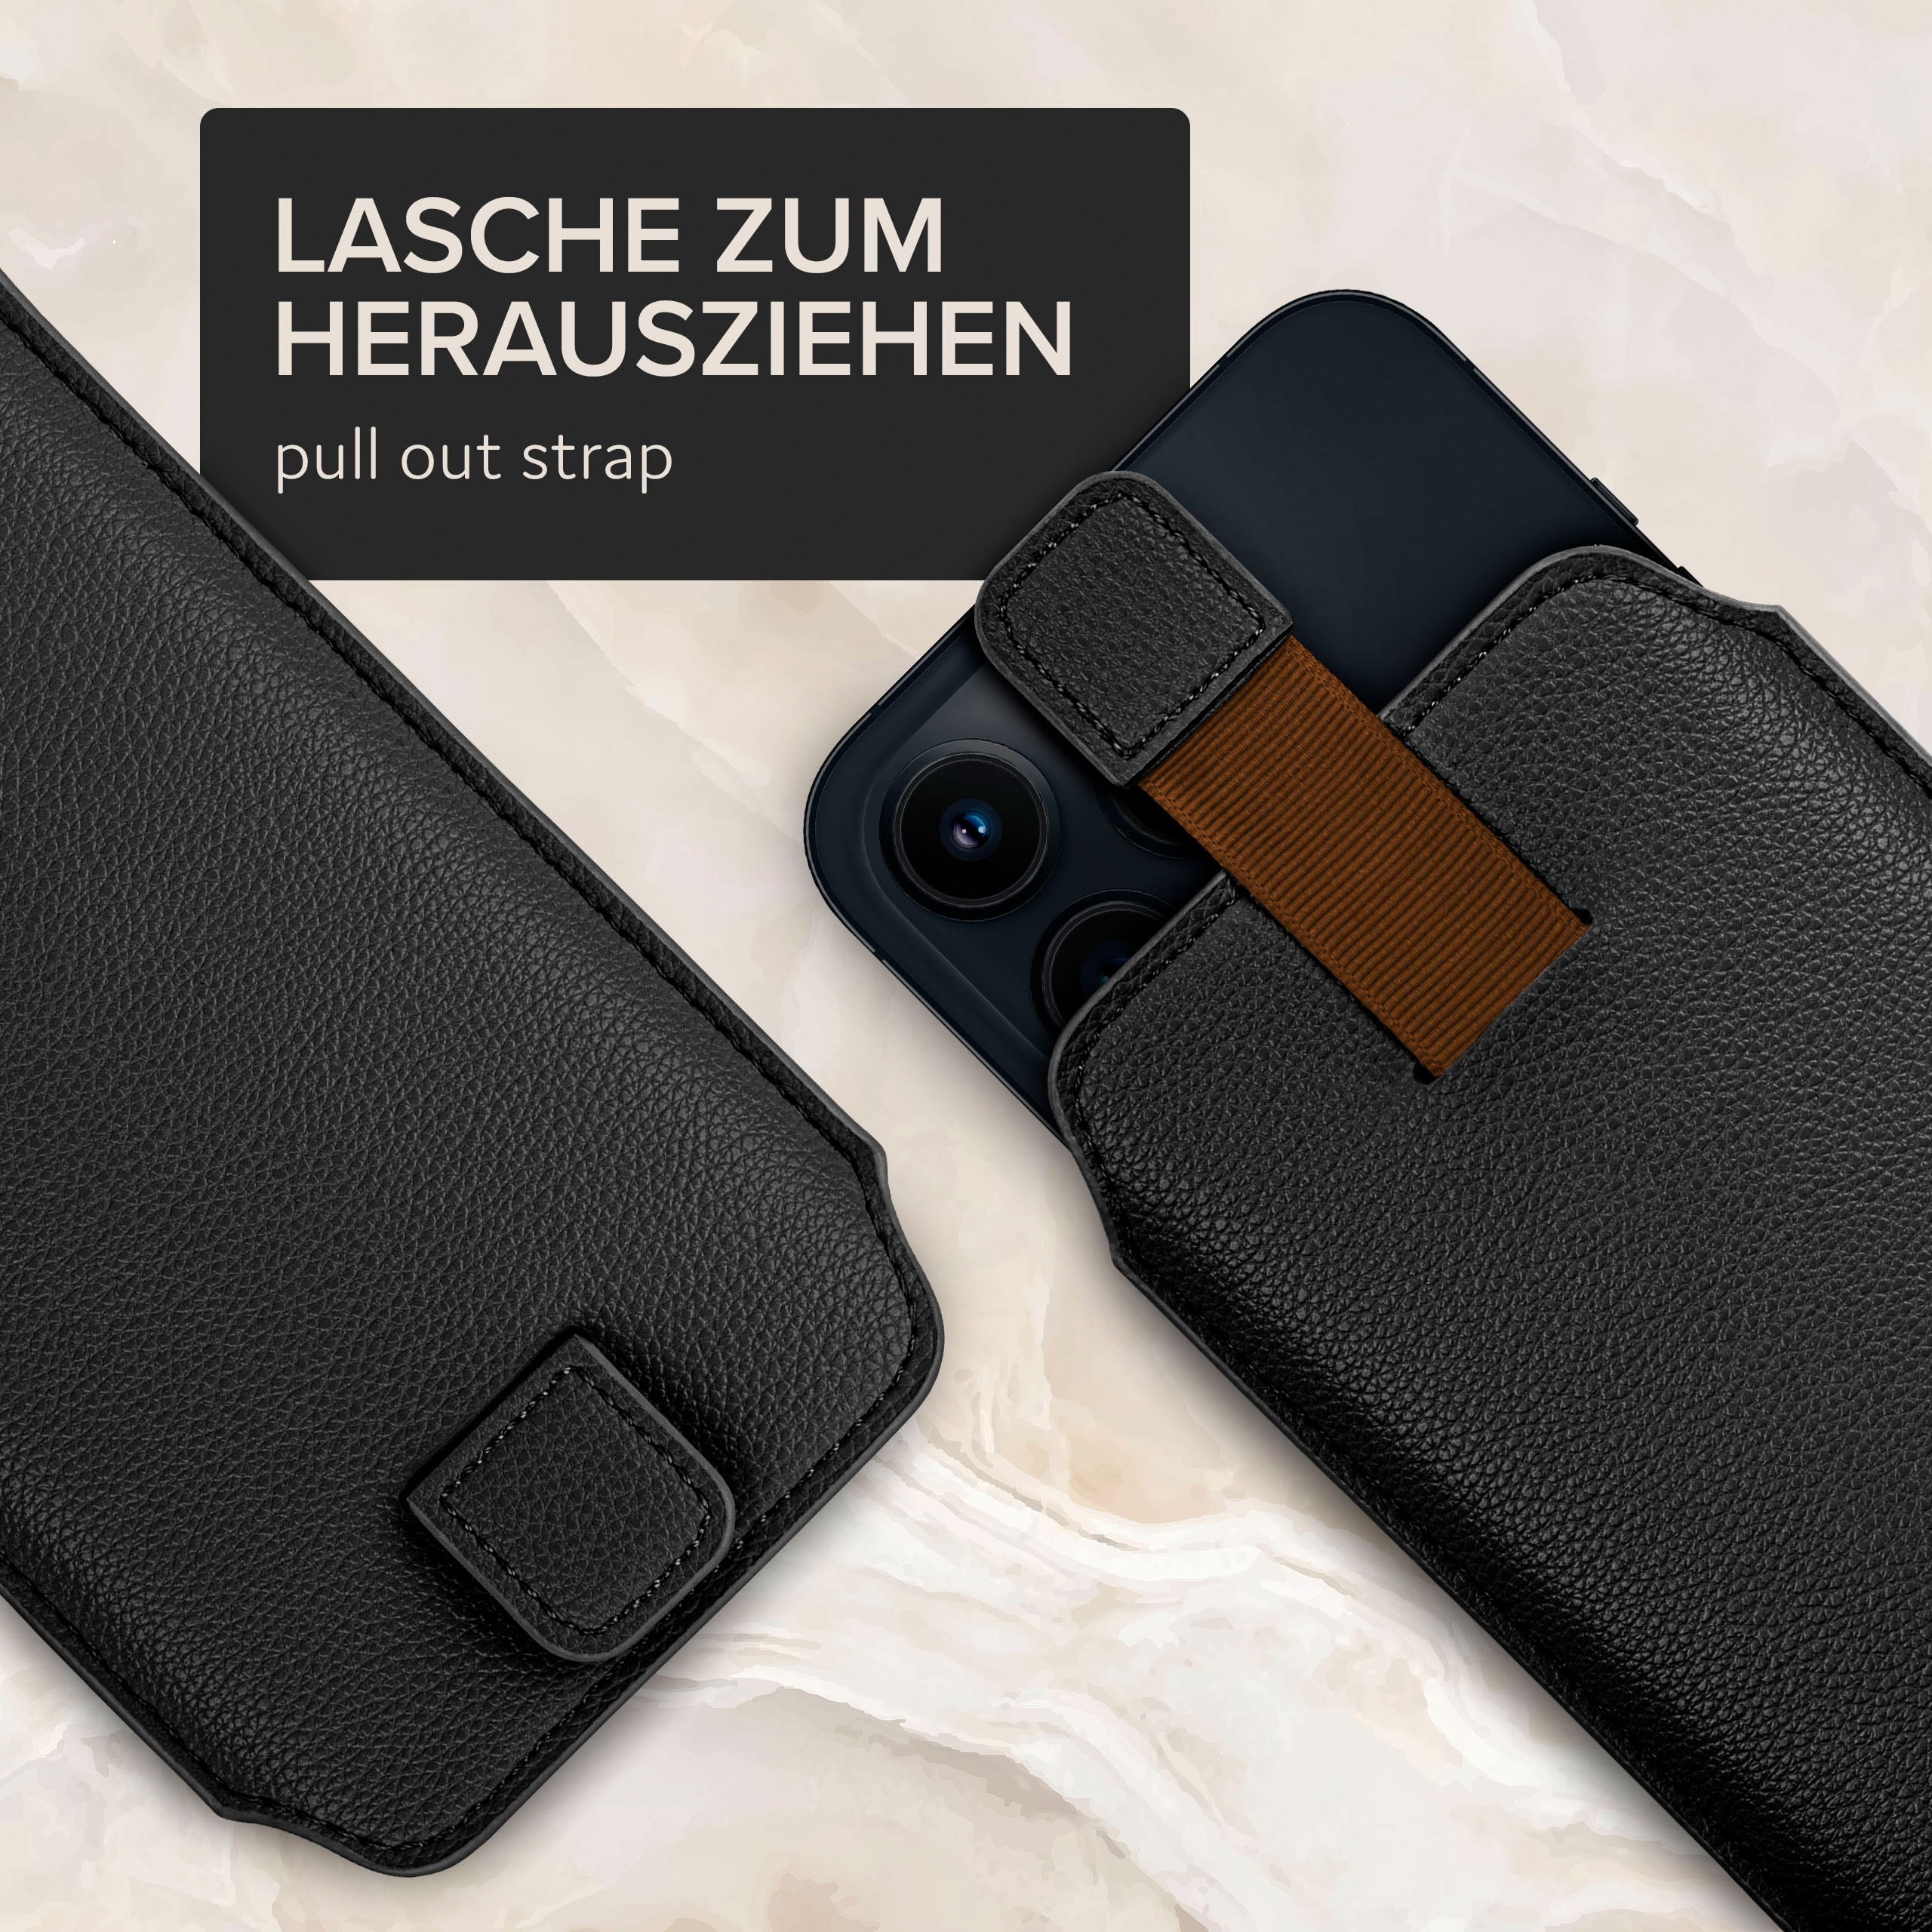 Cover, ONEFLOW Galaxy Schwarz Samsung, Zuglasche, Full S6 Edge, mit Einsteckhülle